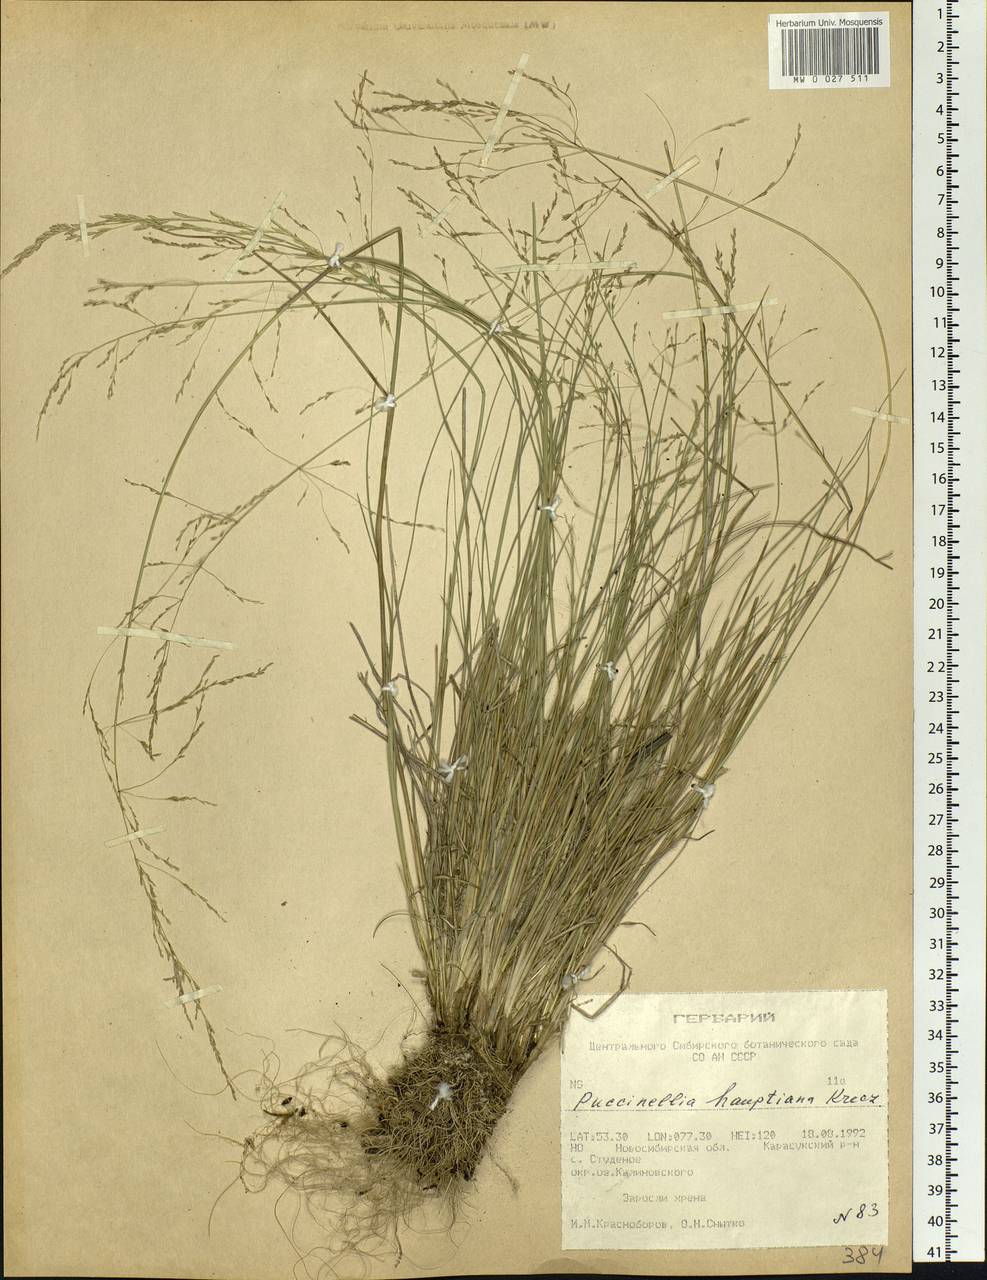 Puccinellia hauptiana (V.I.Krecz.) Kitag., Siberia, Western Siberia (S1) (Russia)